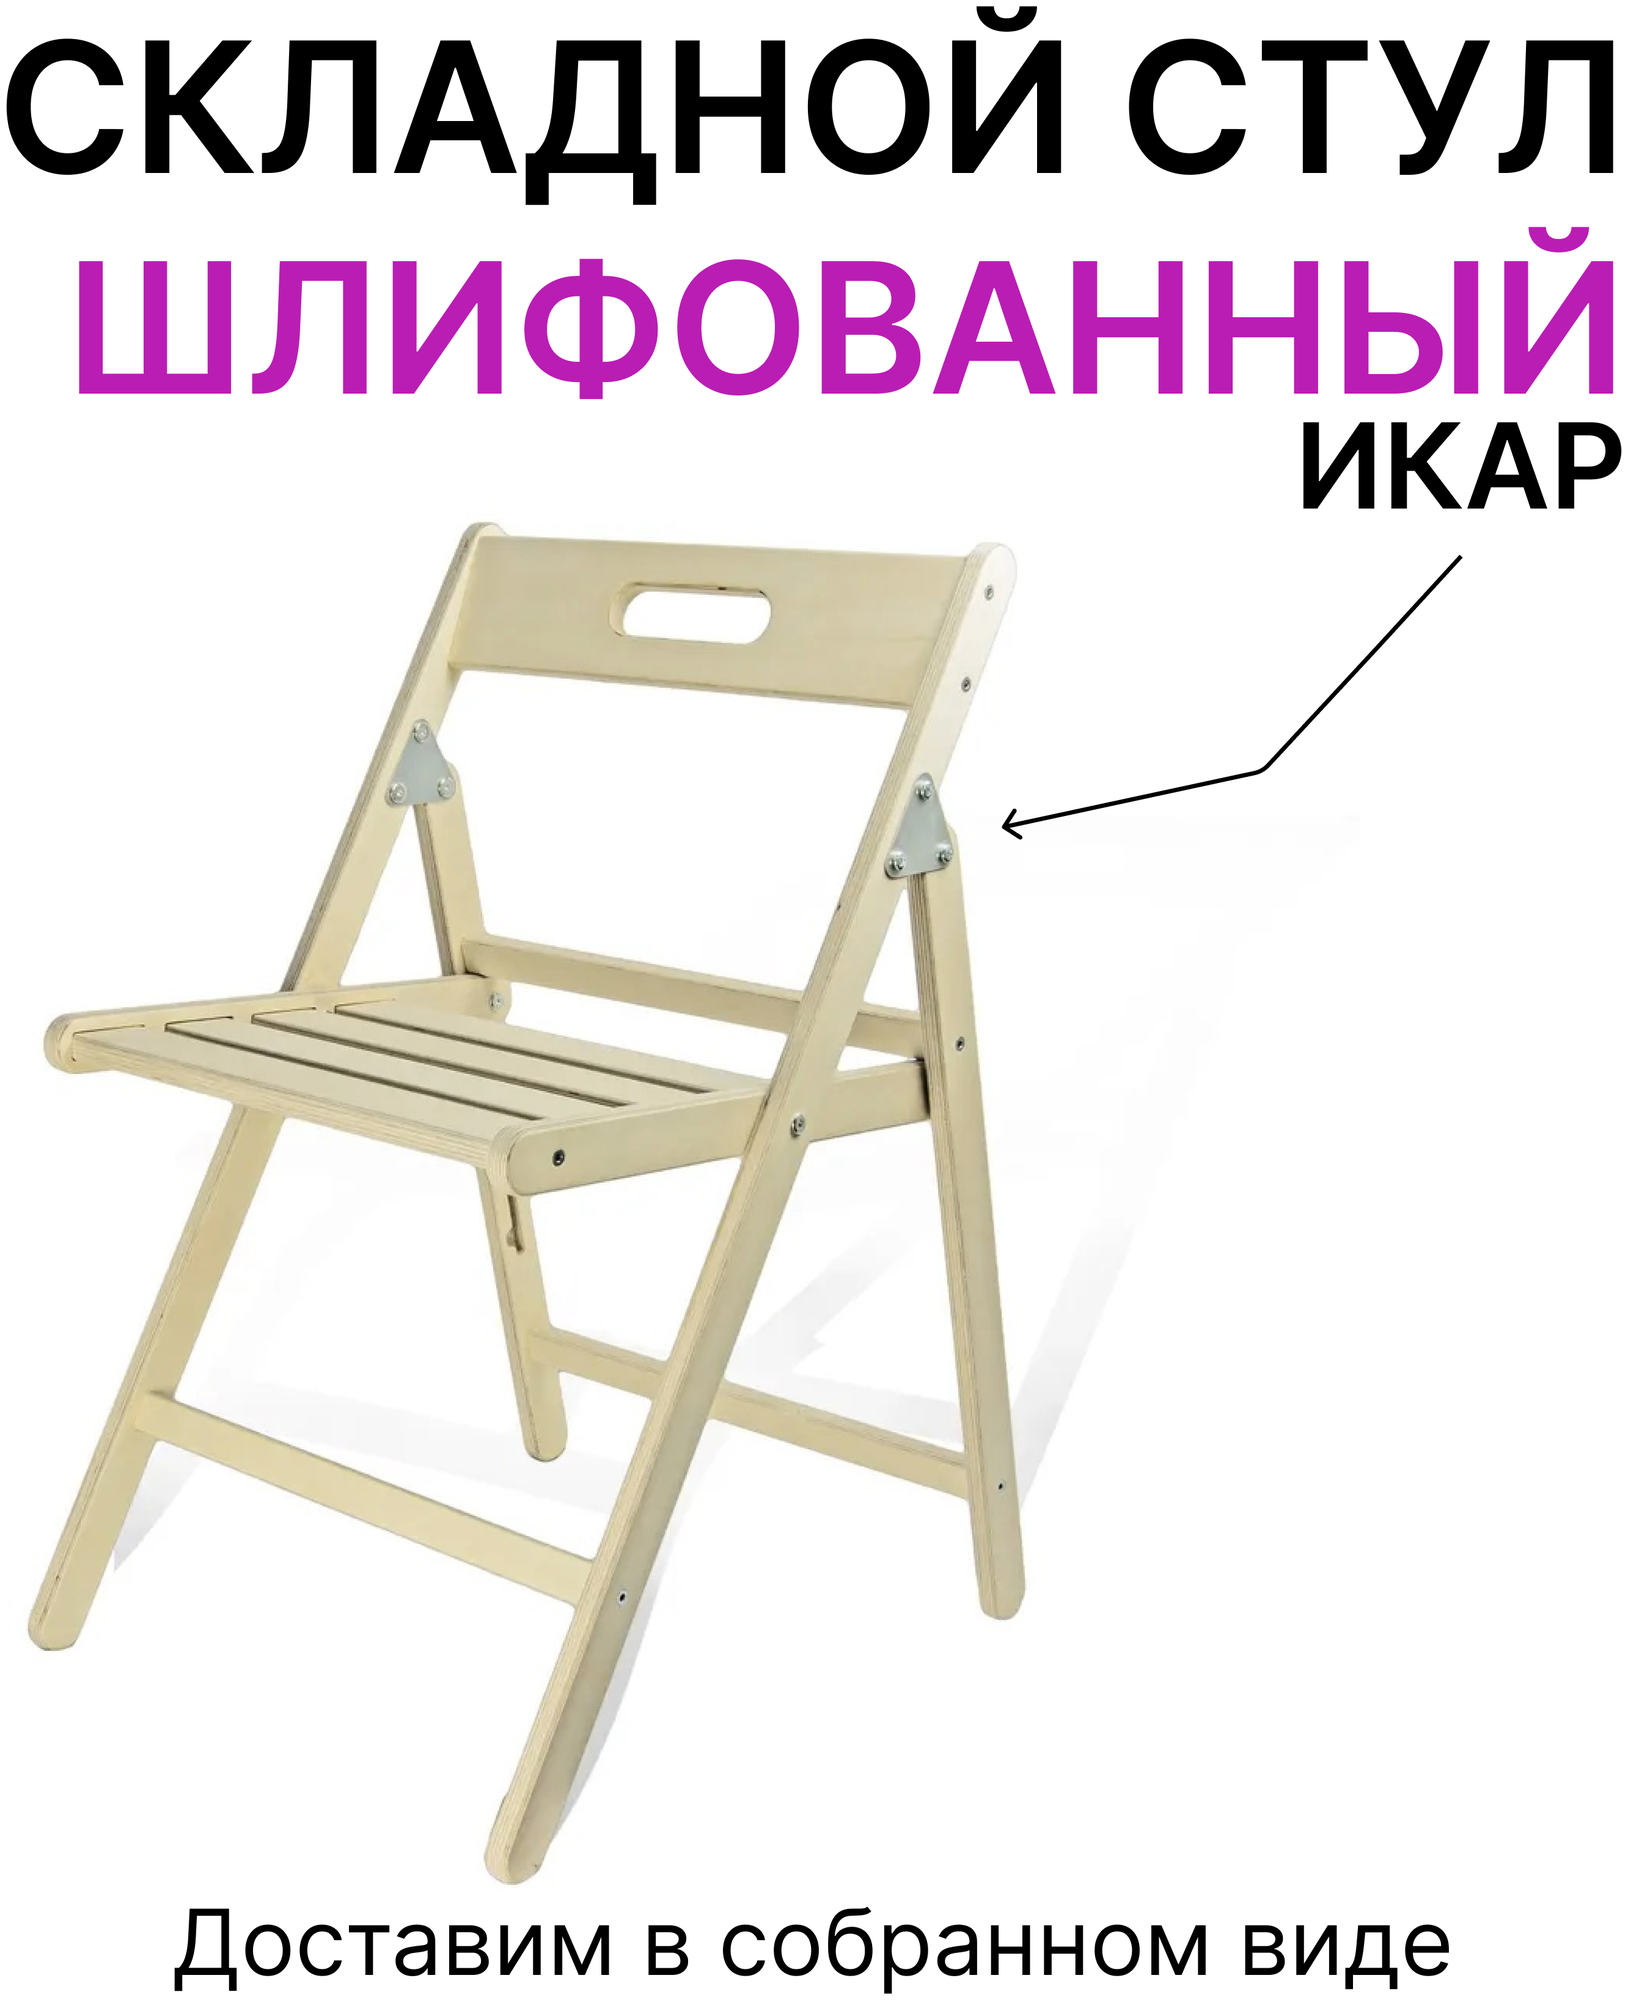 Складной стул деревянный "Икар" шлифованный (собранный) - фотография № 1